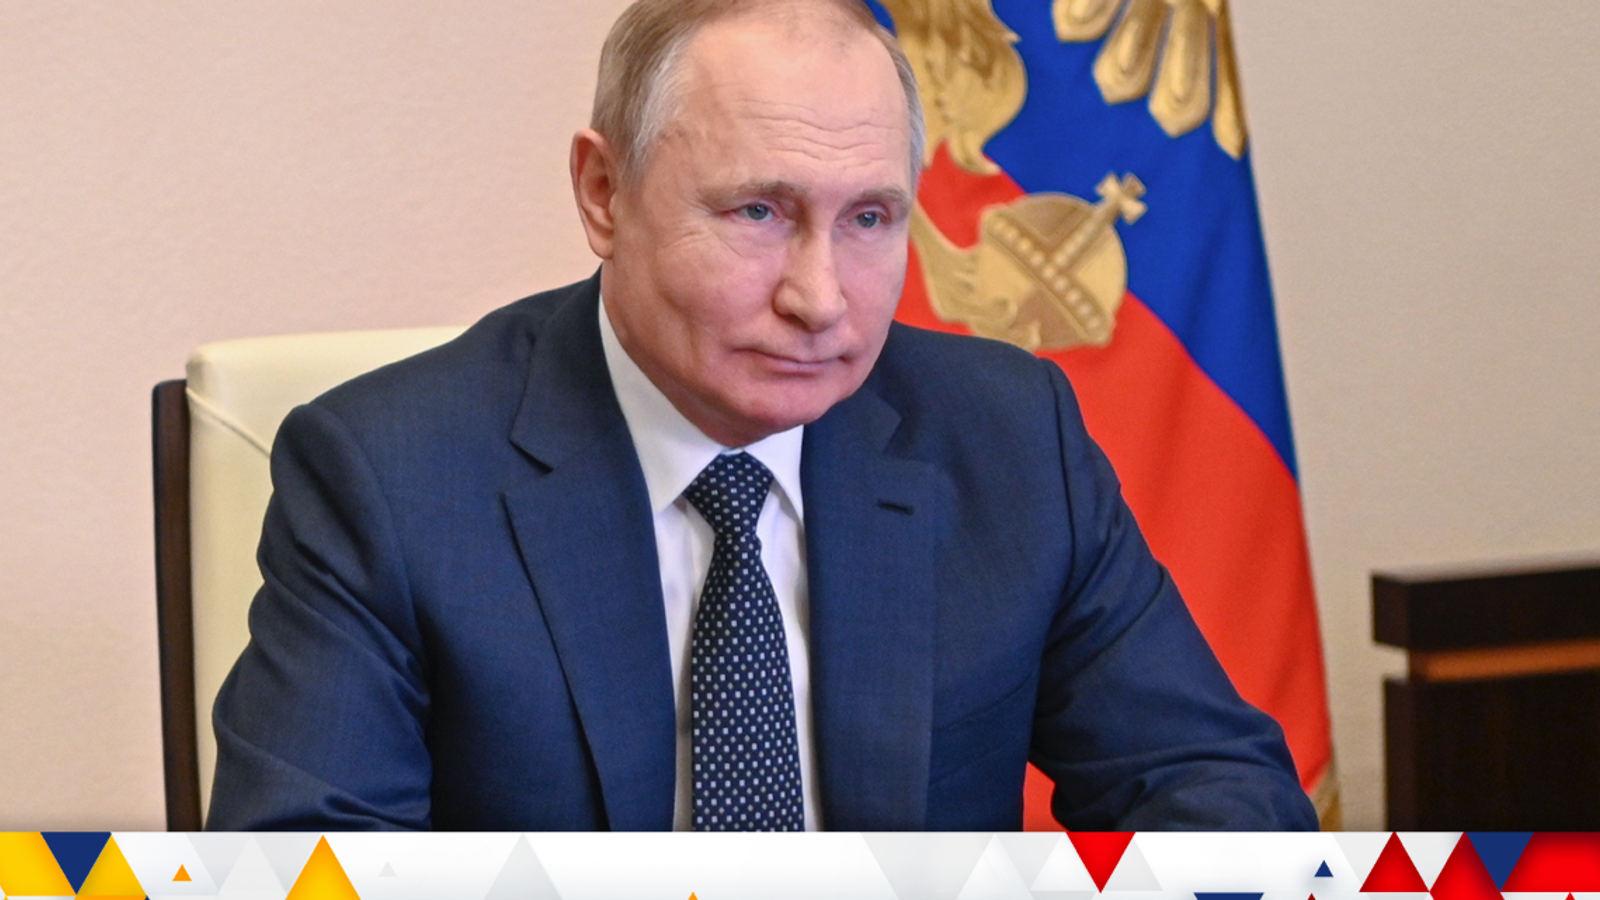 война на Украине: Россия обвиняет Запад в «отвратительных» действиях, а Путин реагирует на высказывания Байдена о «военных преступлениях» |  Главные новости Новости